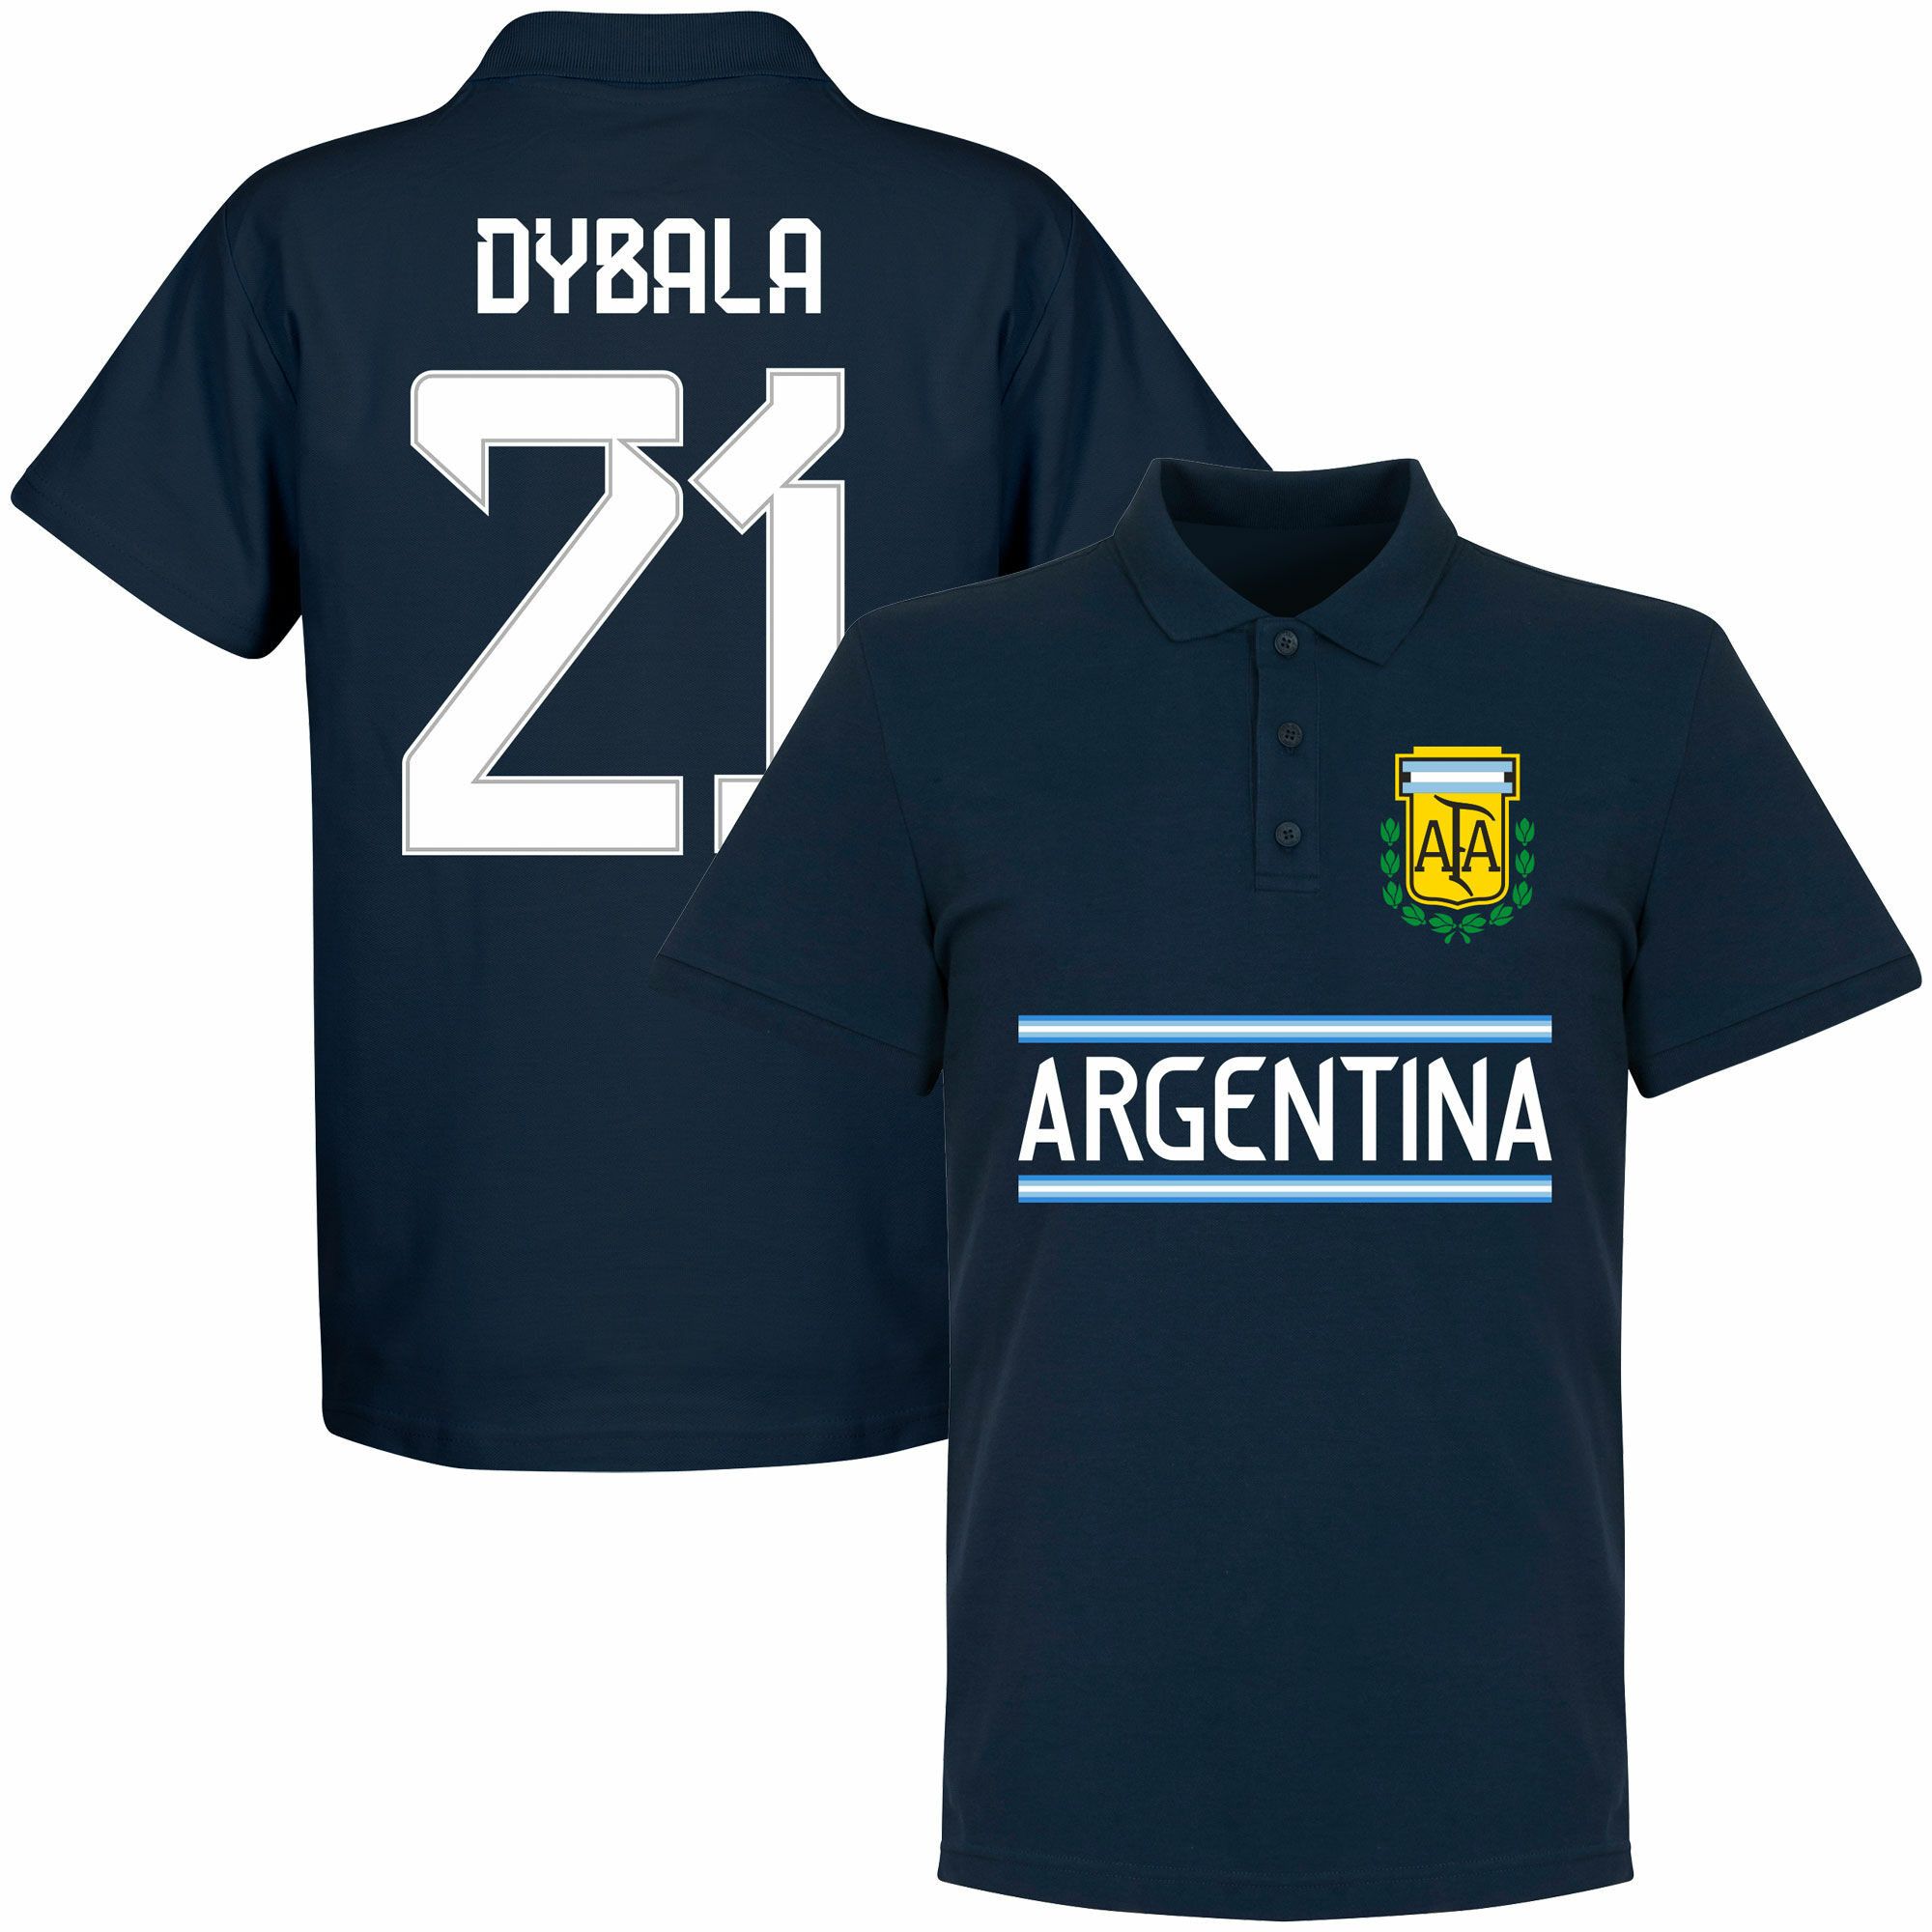 Argentina - Tričko s límečkem - Paulo Dybala, číslo 21, modré